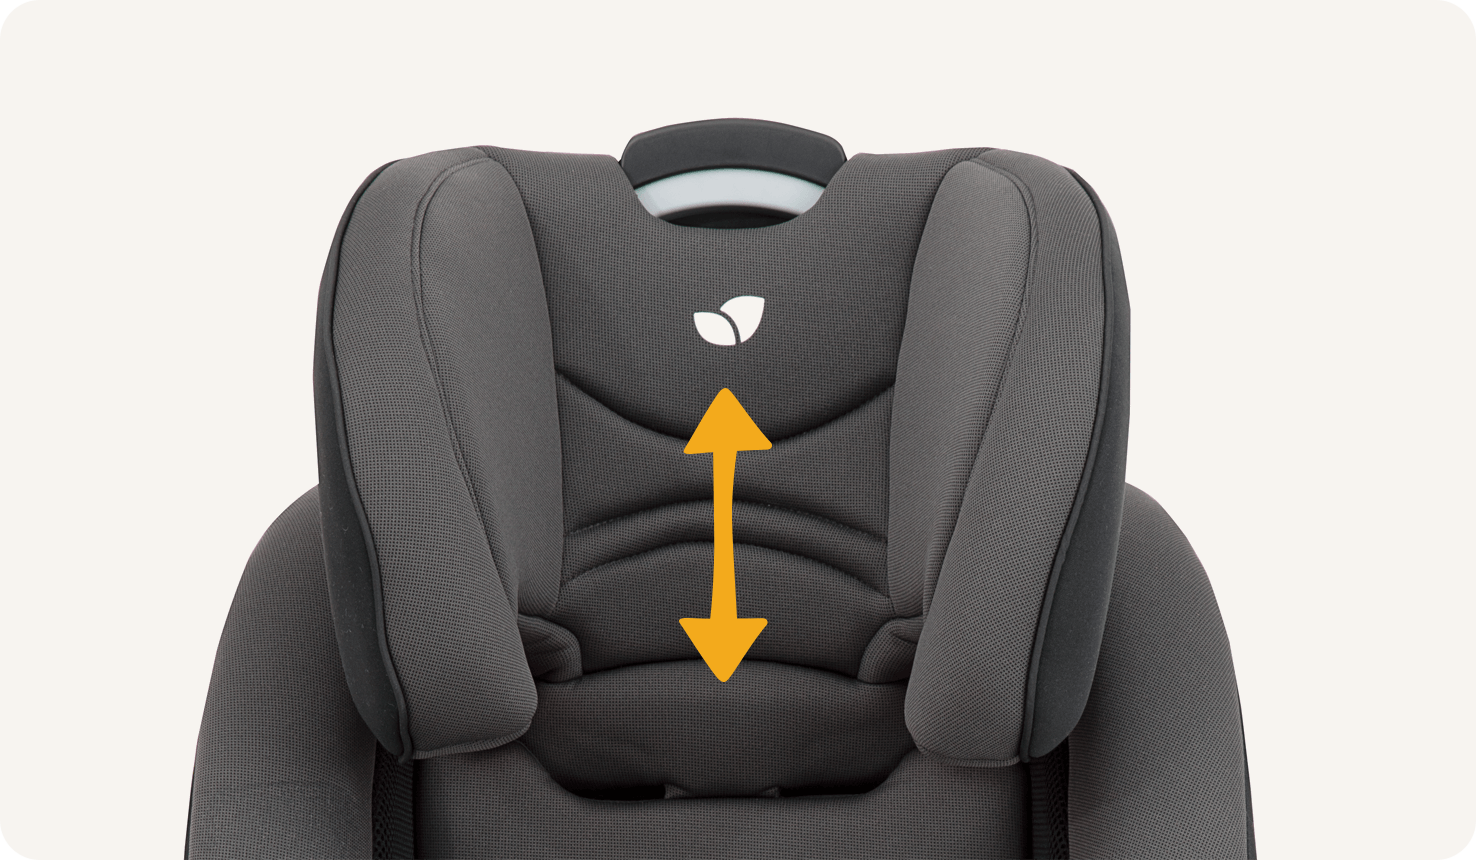  Vergrößerte Ansicht der Kopfstütze eines Joie verso Booster-Kindersitz mit einem orangefarbenen Pfeil, der die verschiedenen Kopfstützenpositionen anzeigt.